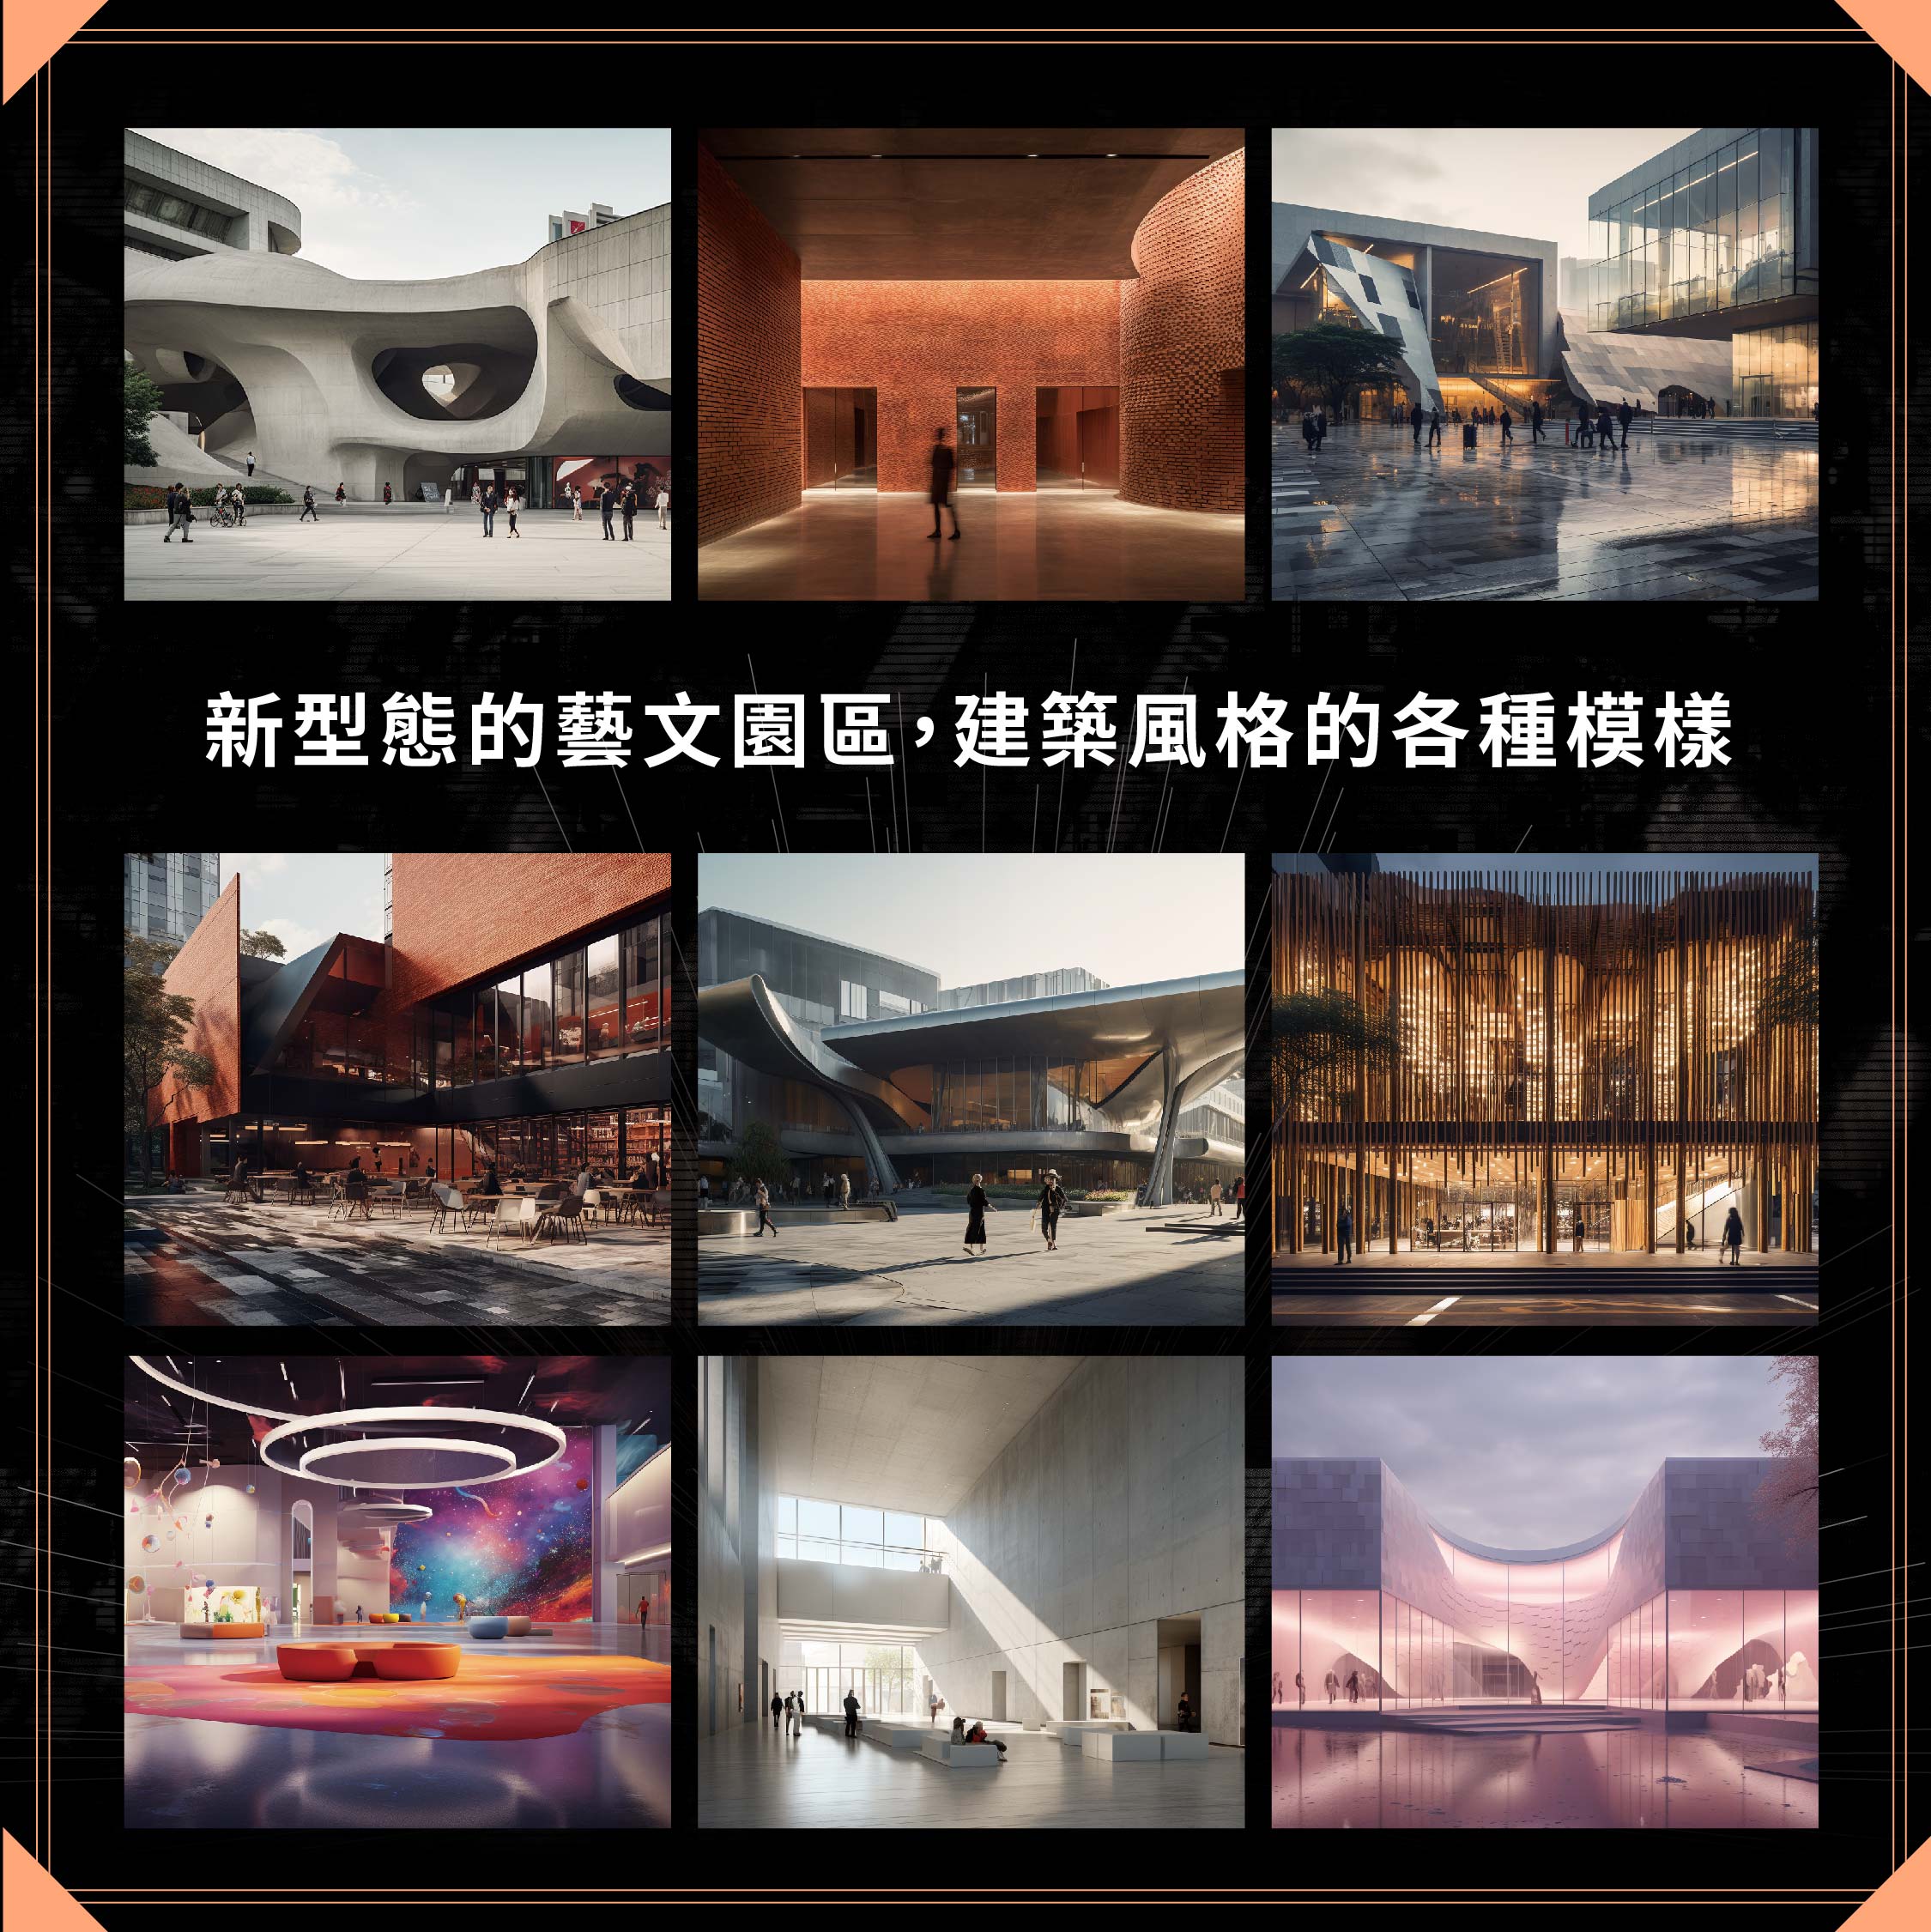 「打開空總 X  AI 多重未來」邀請大家一起成為首都臺北國家級文化建設的規劃者（臺灣當代文化實驗場提供）.jpg